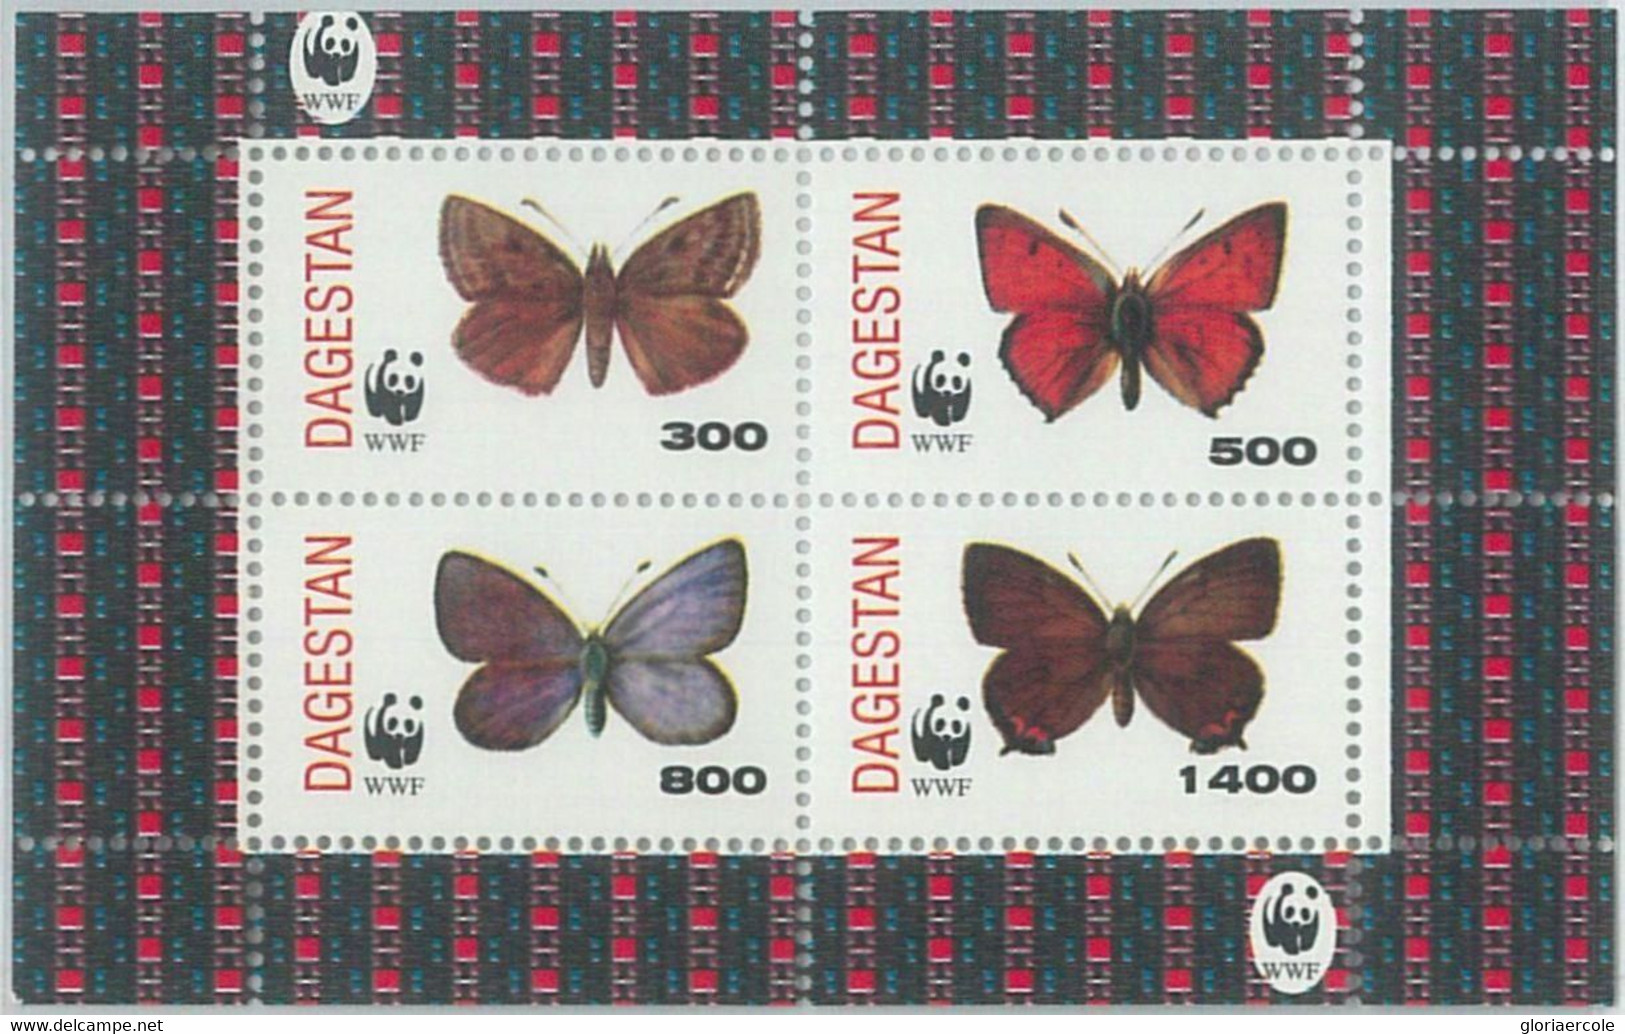 M2000 - RUSSIAN STATE, SHEET: WWF, Butterflies, Insects  R04.22 - Gebruikt